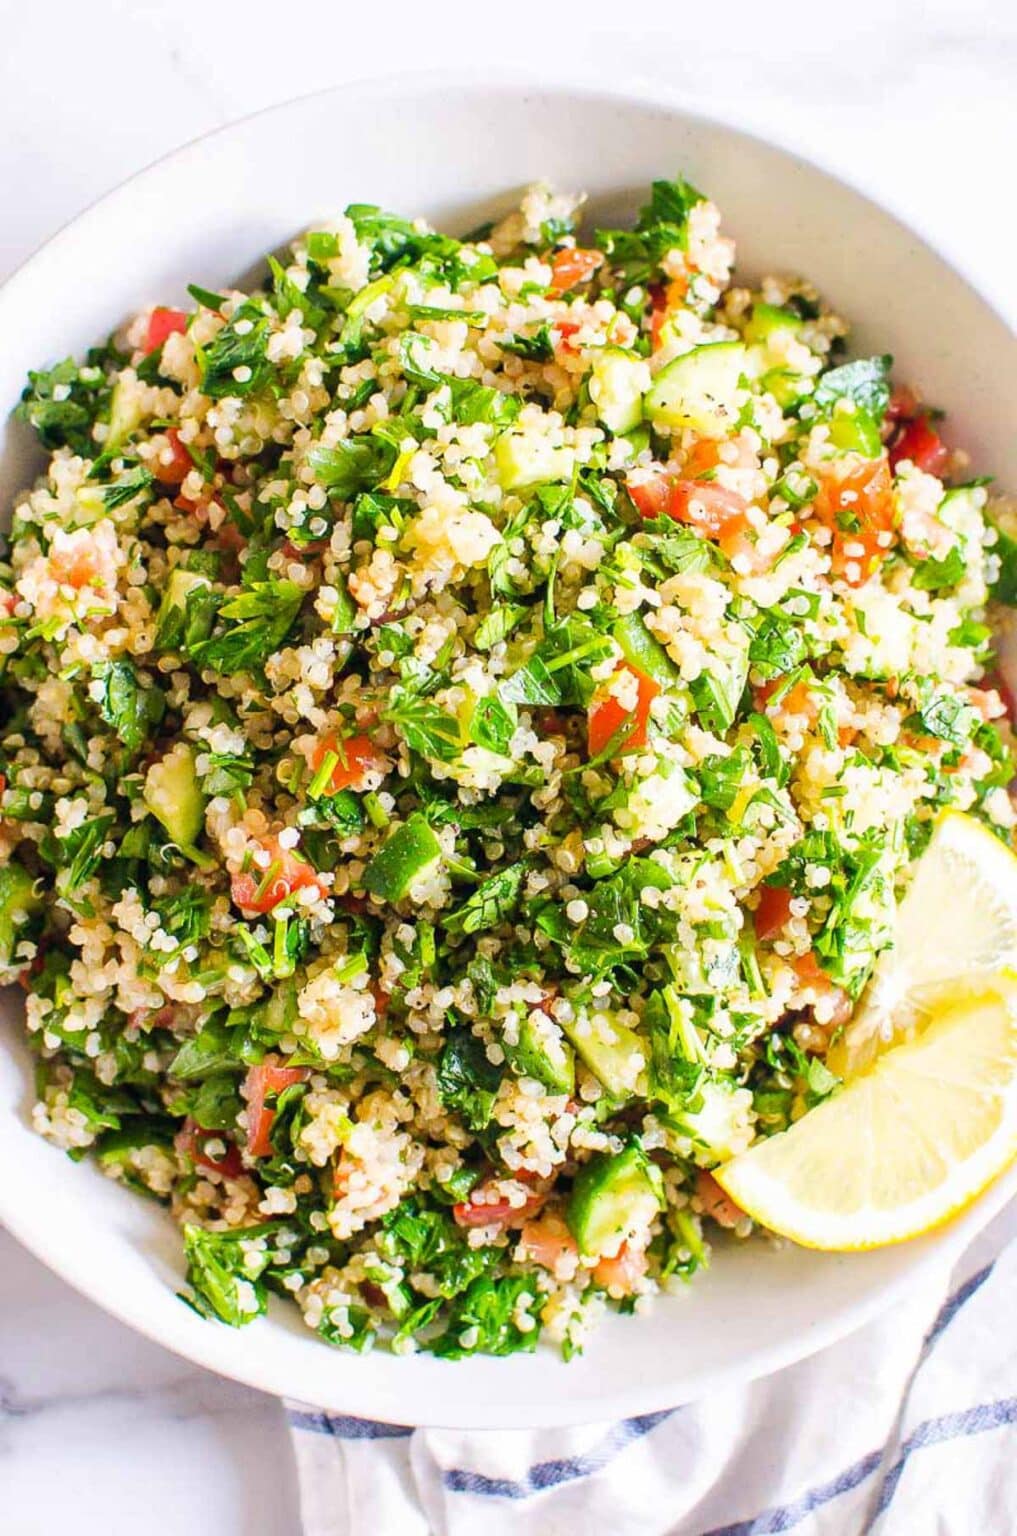 Quinoa Tabbouleh Salad - iFoodReal.com